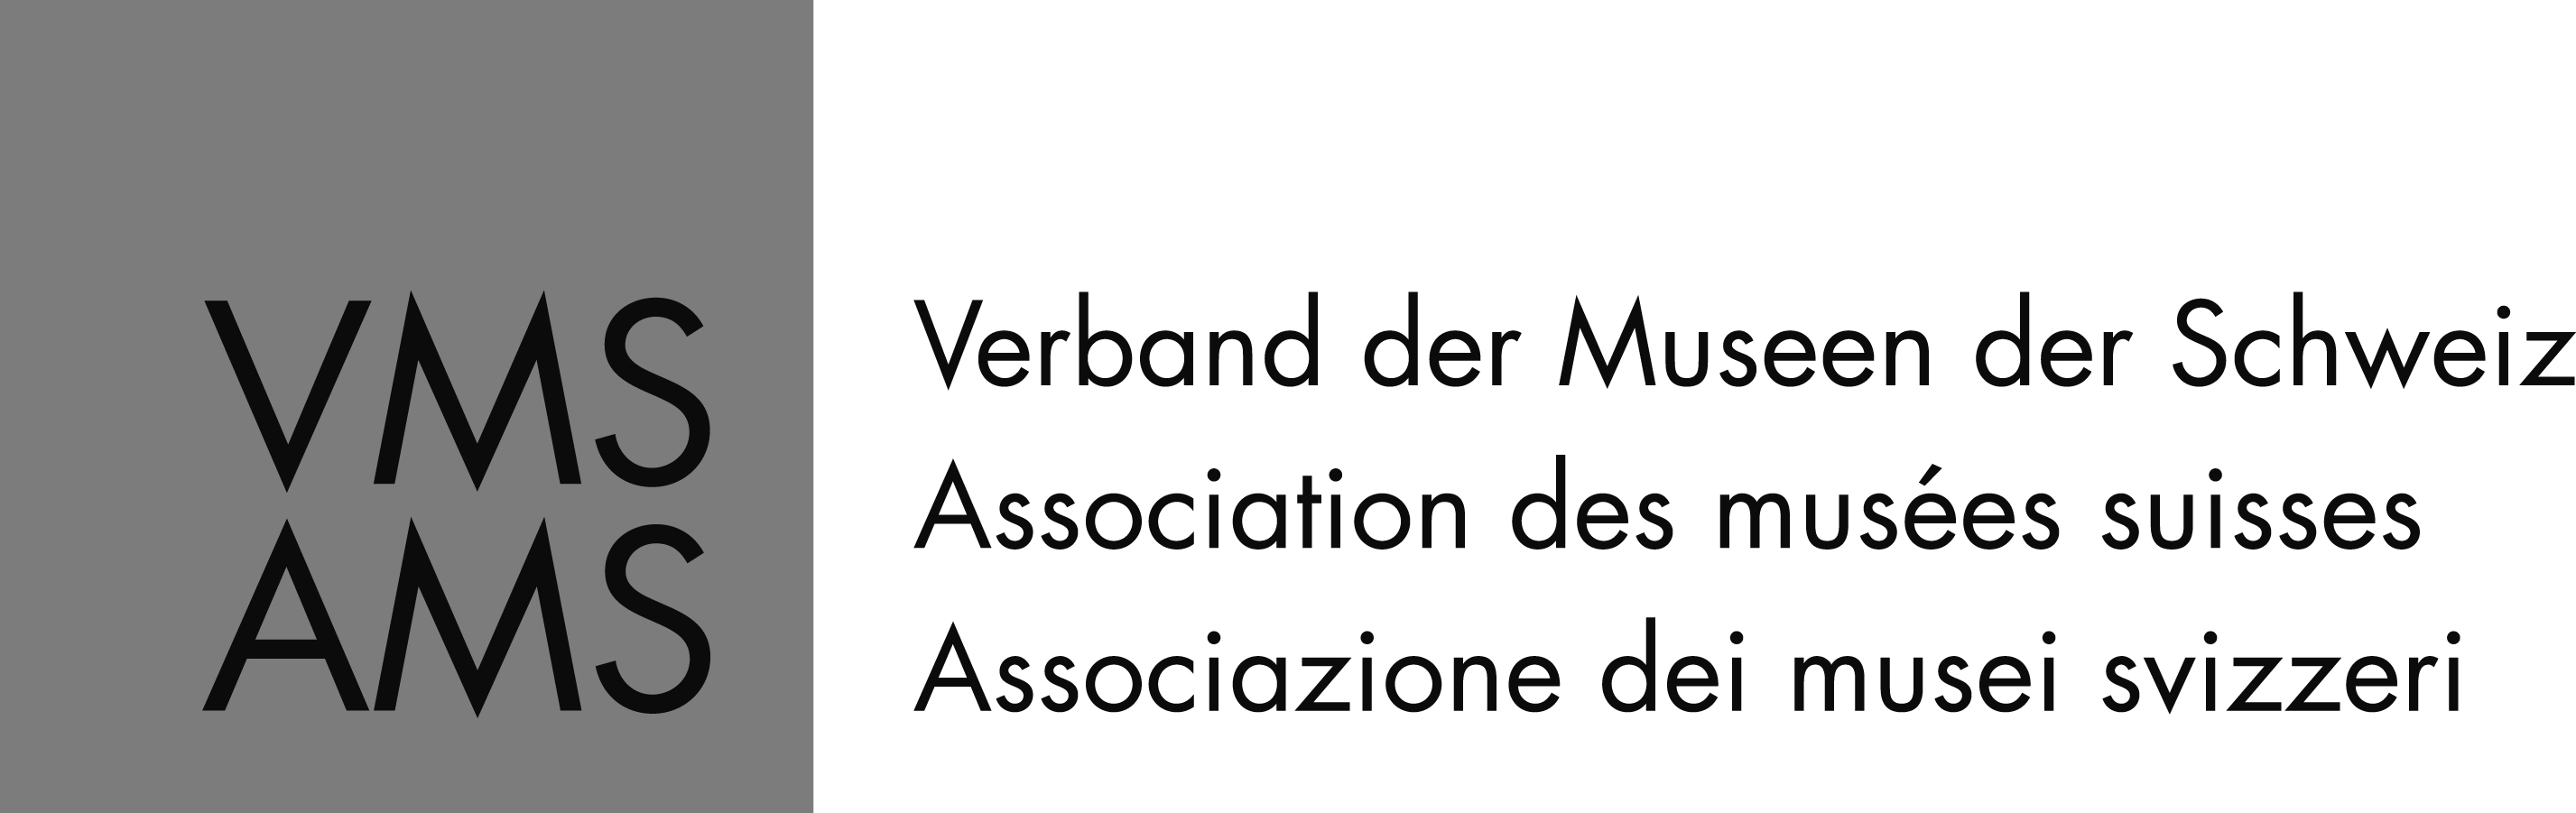 Logo: Verband der Museen der Schweiz VMS